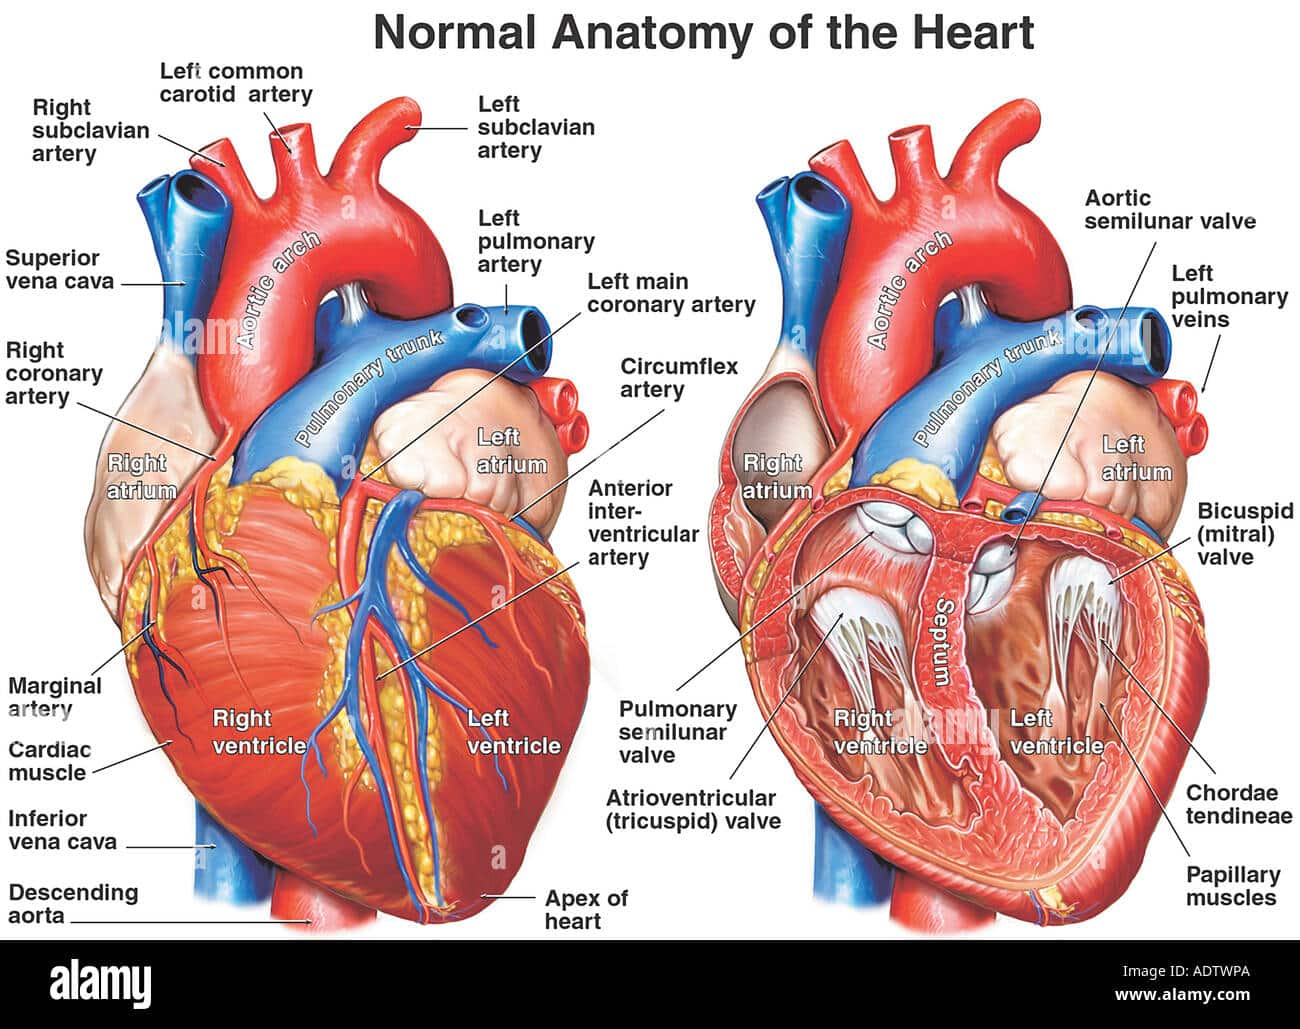 corazon realista con anatomia